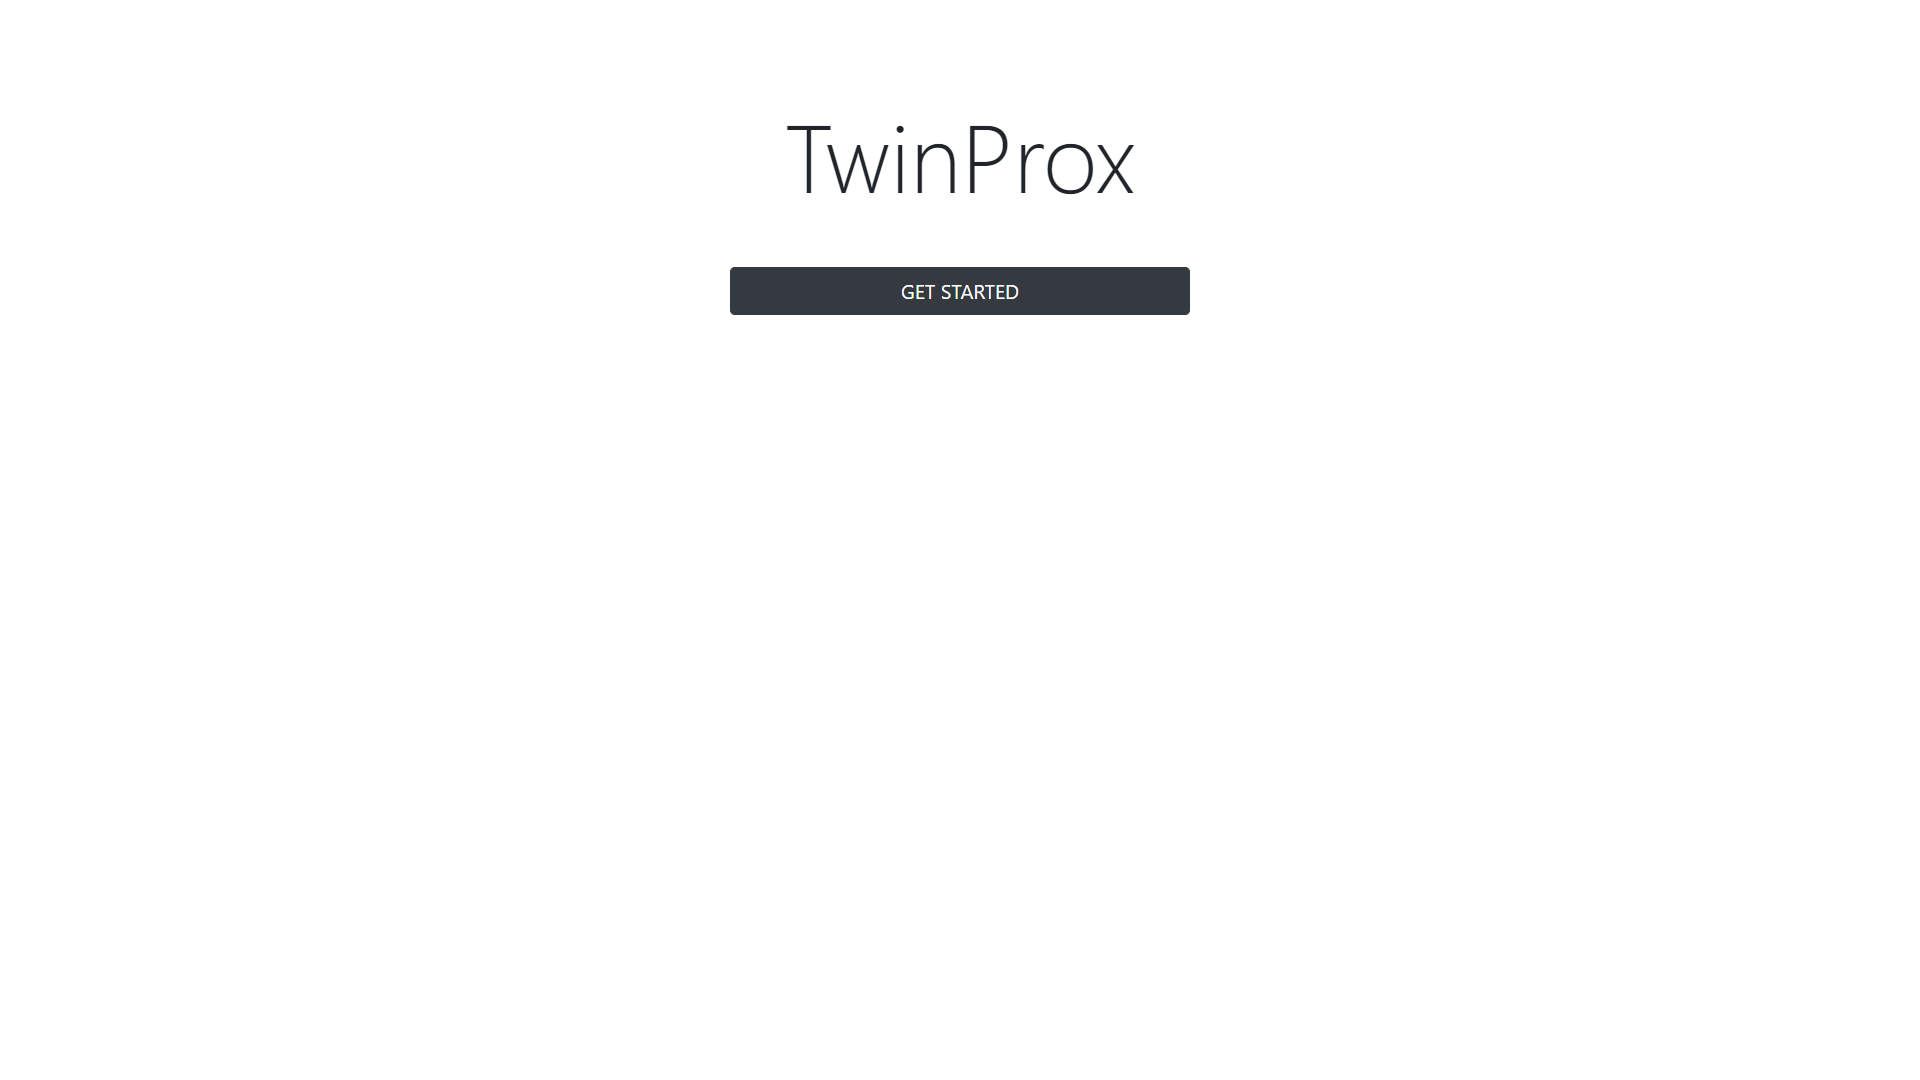 TwinProx_Start.png